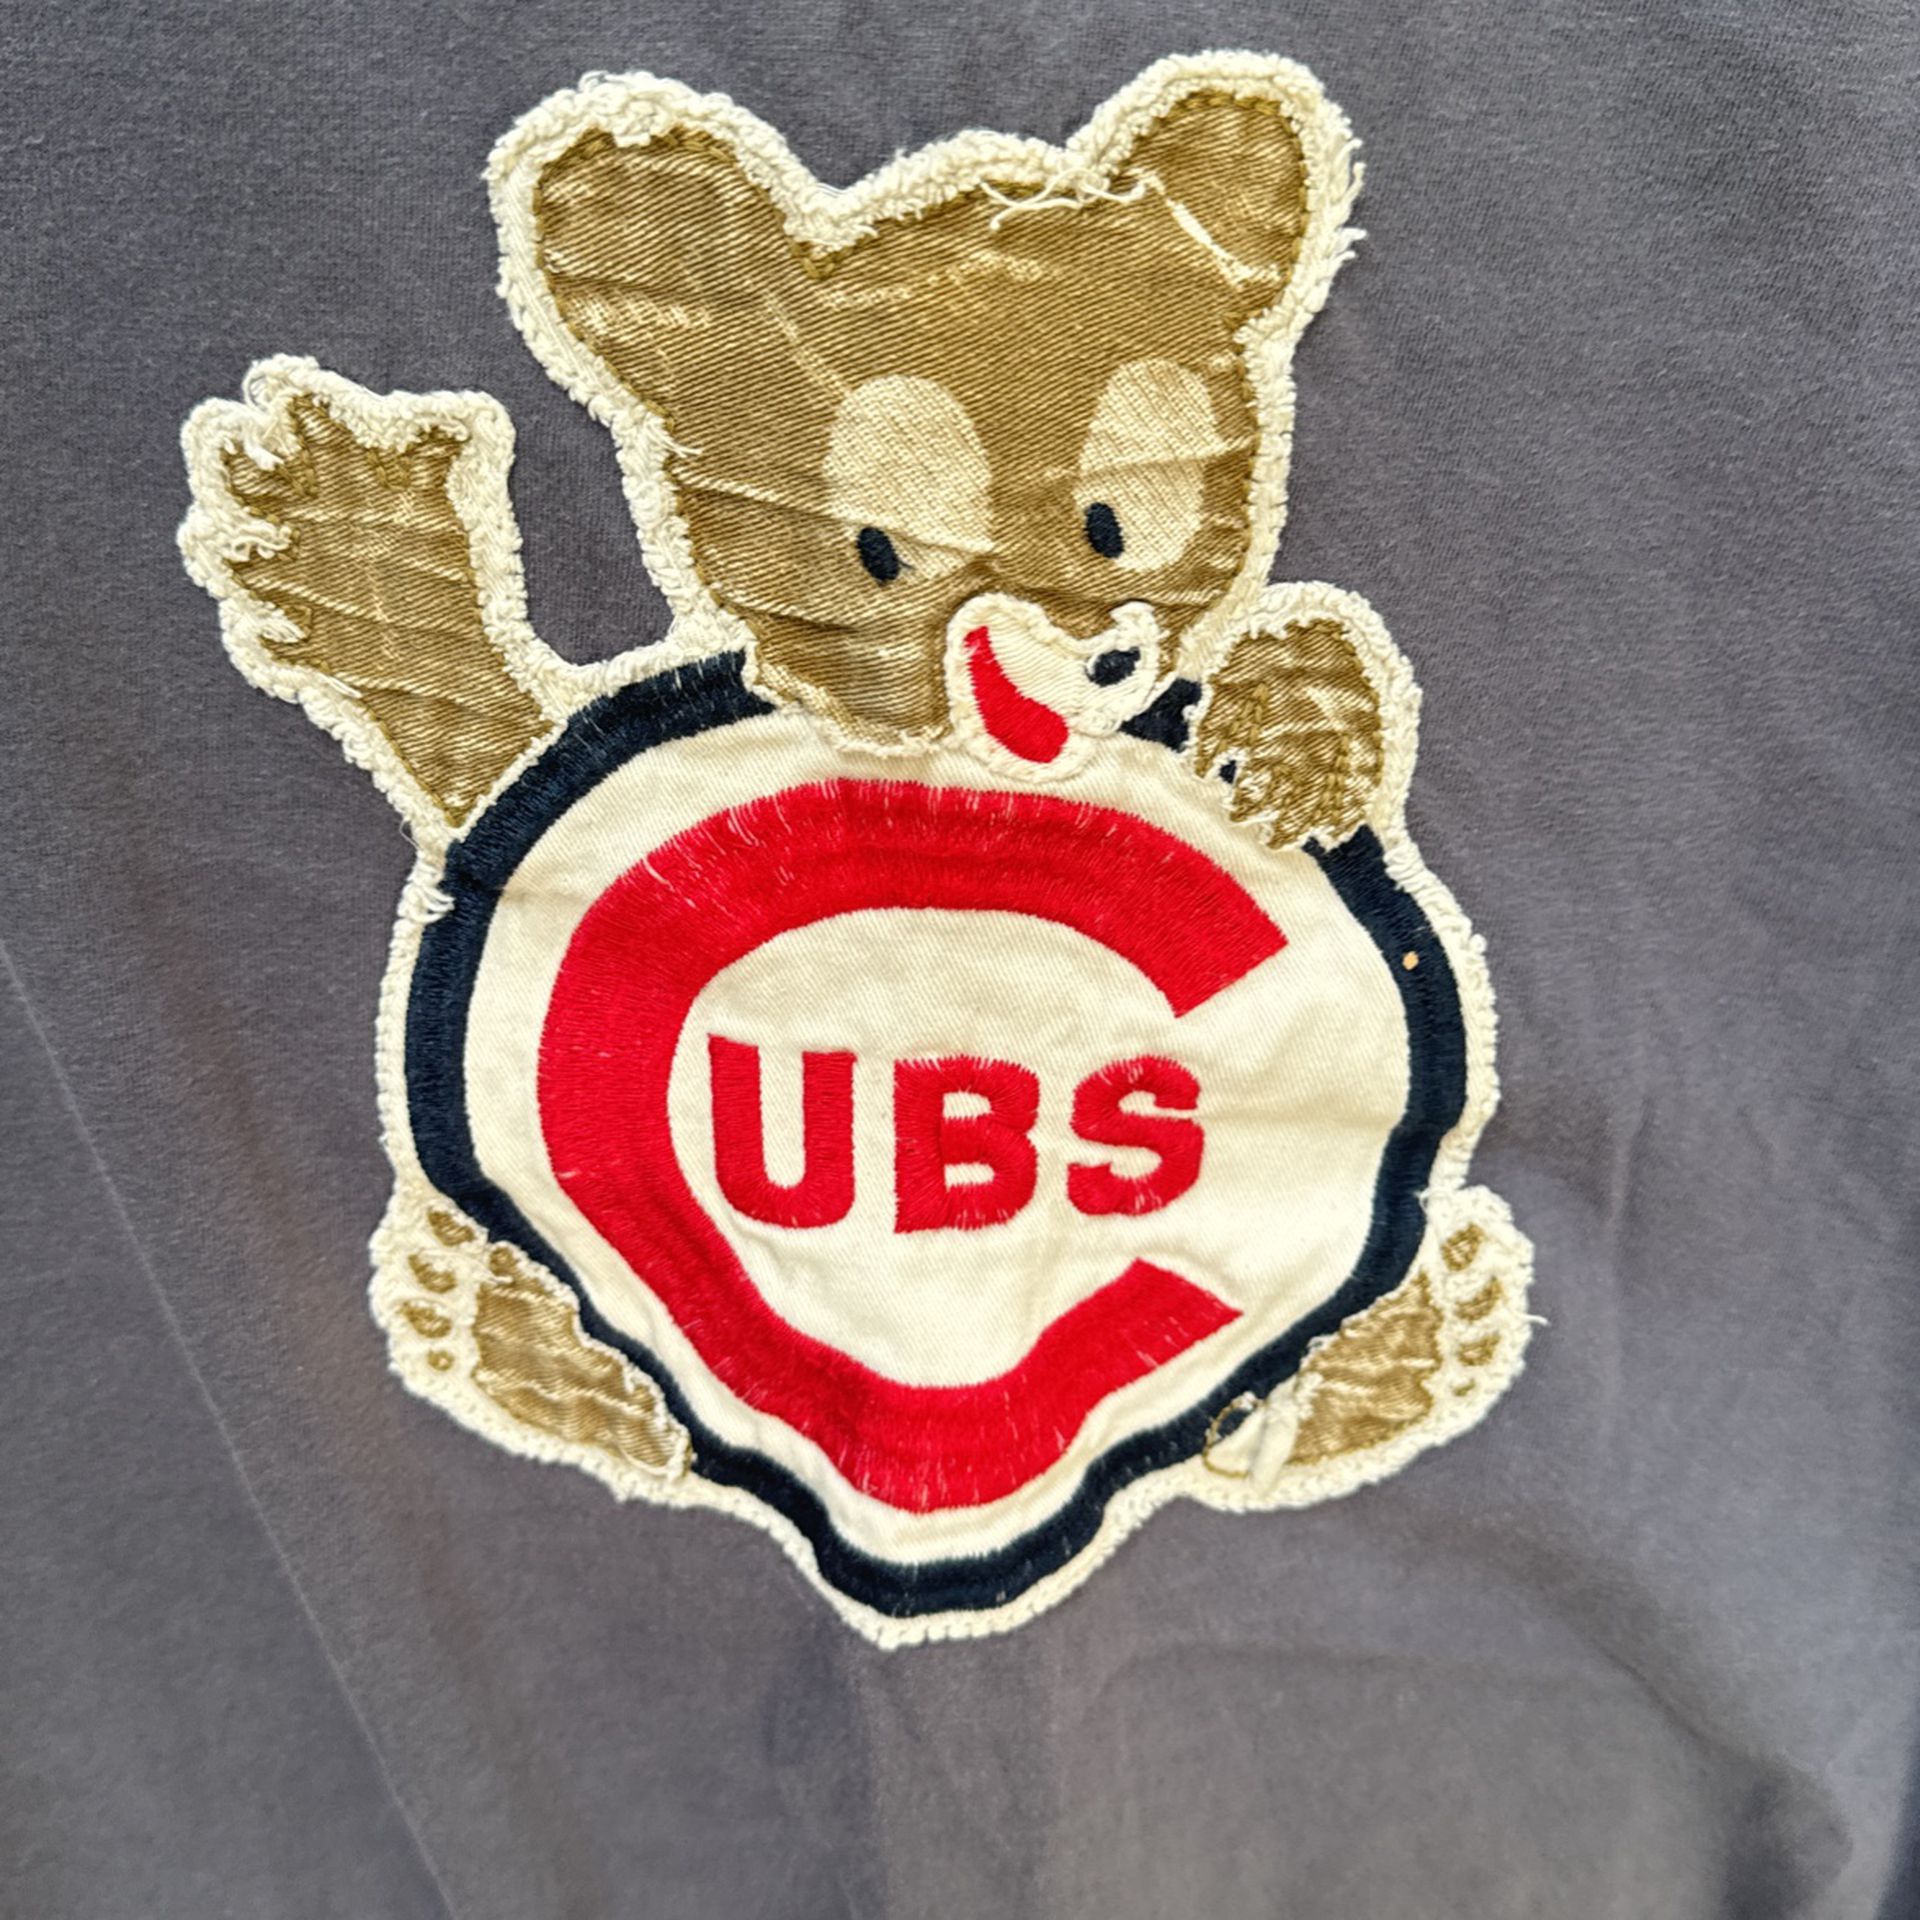 Cubby Bear - Cubs Vintage T Shirt - Men’s Large